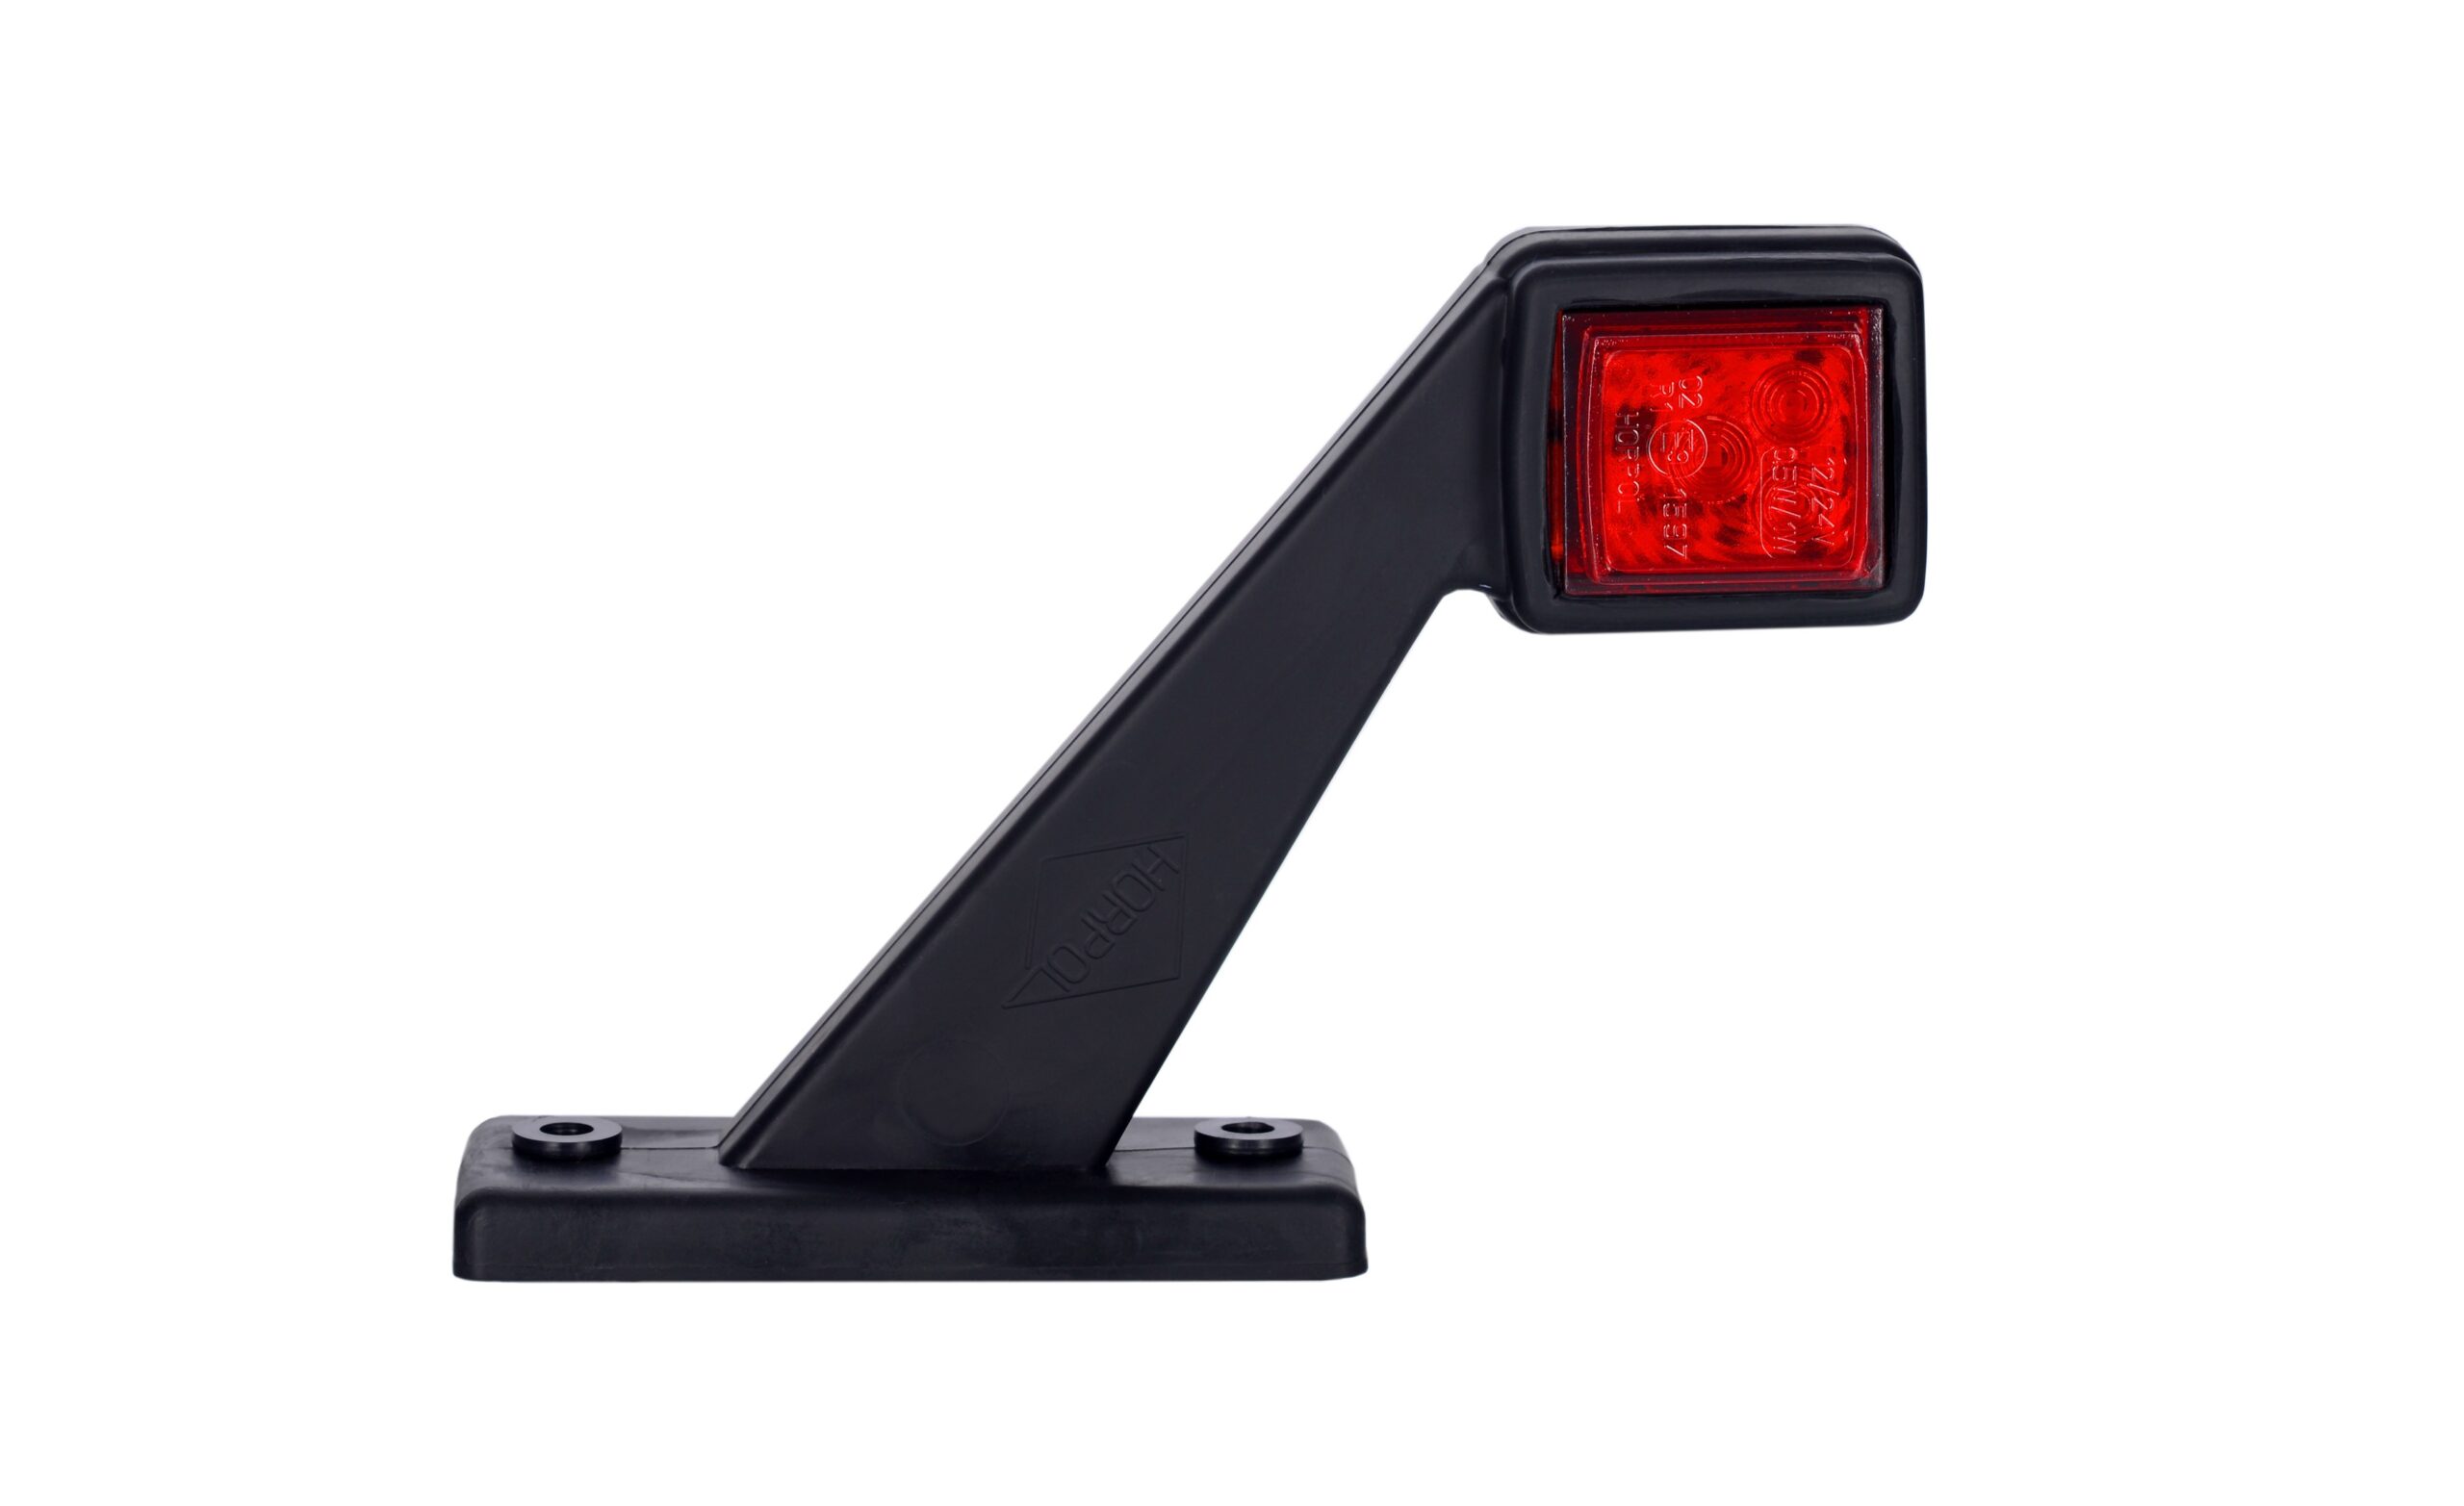 Lămpi de poziție și marcaj - Lampă gabarit pătrată, Horpol, pentru partea stângă, LED alb-roșu, alimentare 12/24V, fomcoshop.ro